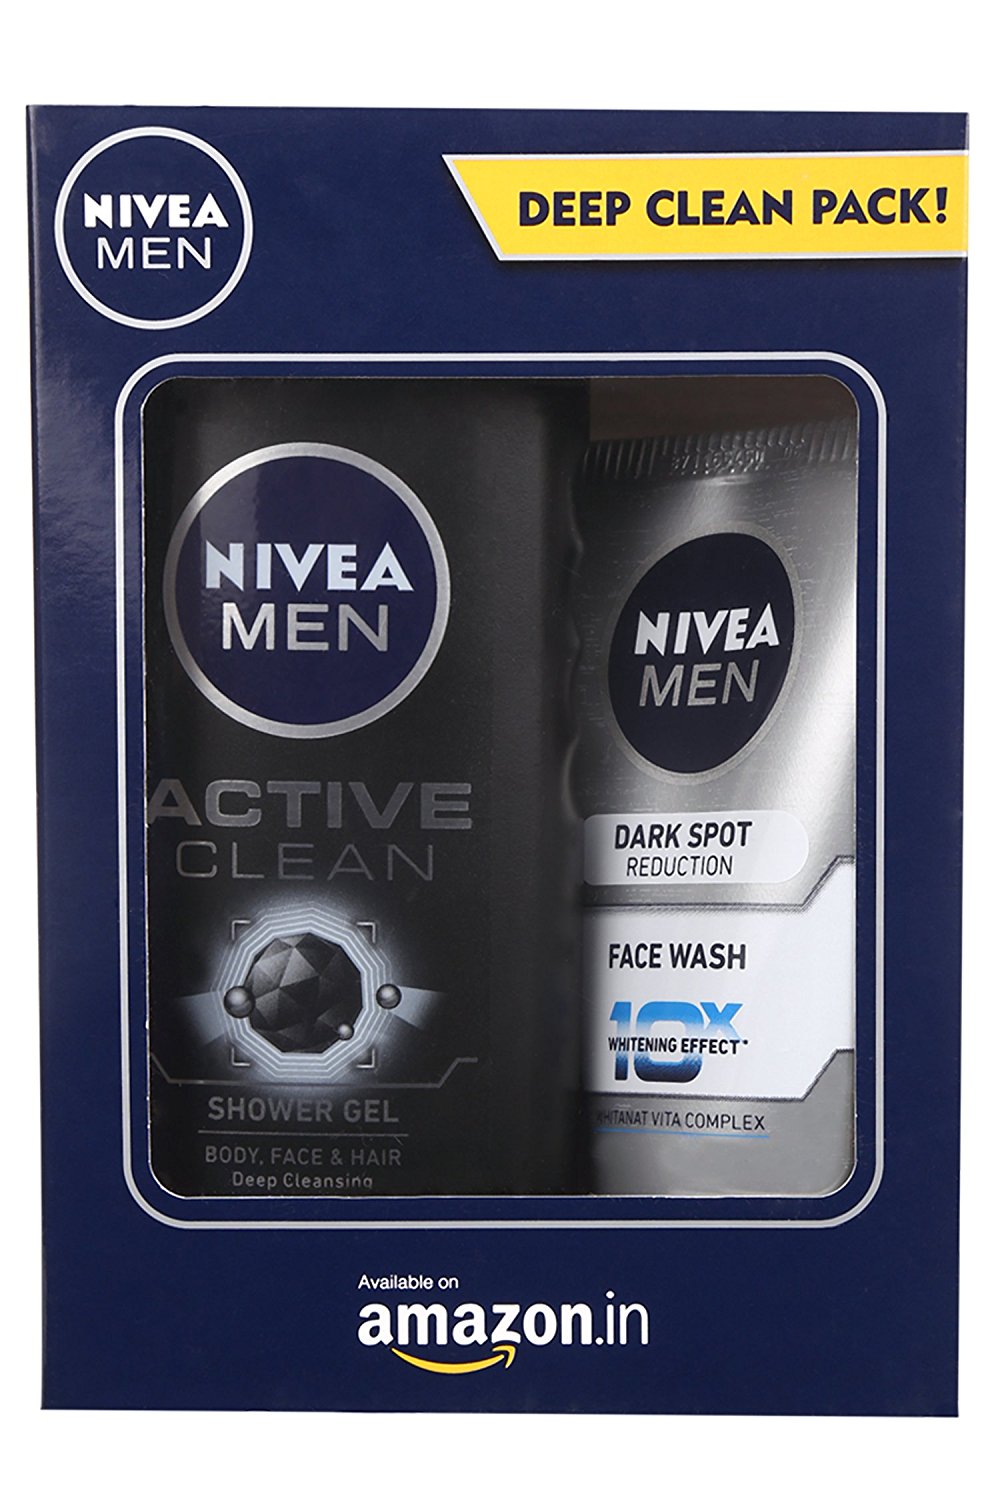 Nivea Men Dark Spot Reduction Facewash, 100ml with Active Clean Shower Gel, 250ml